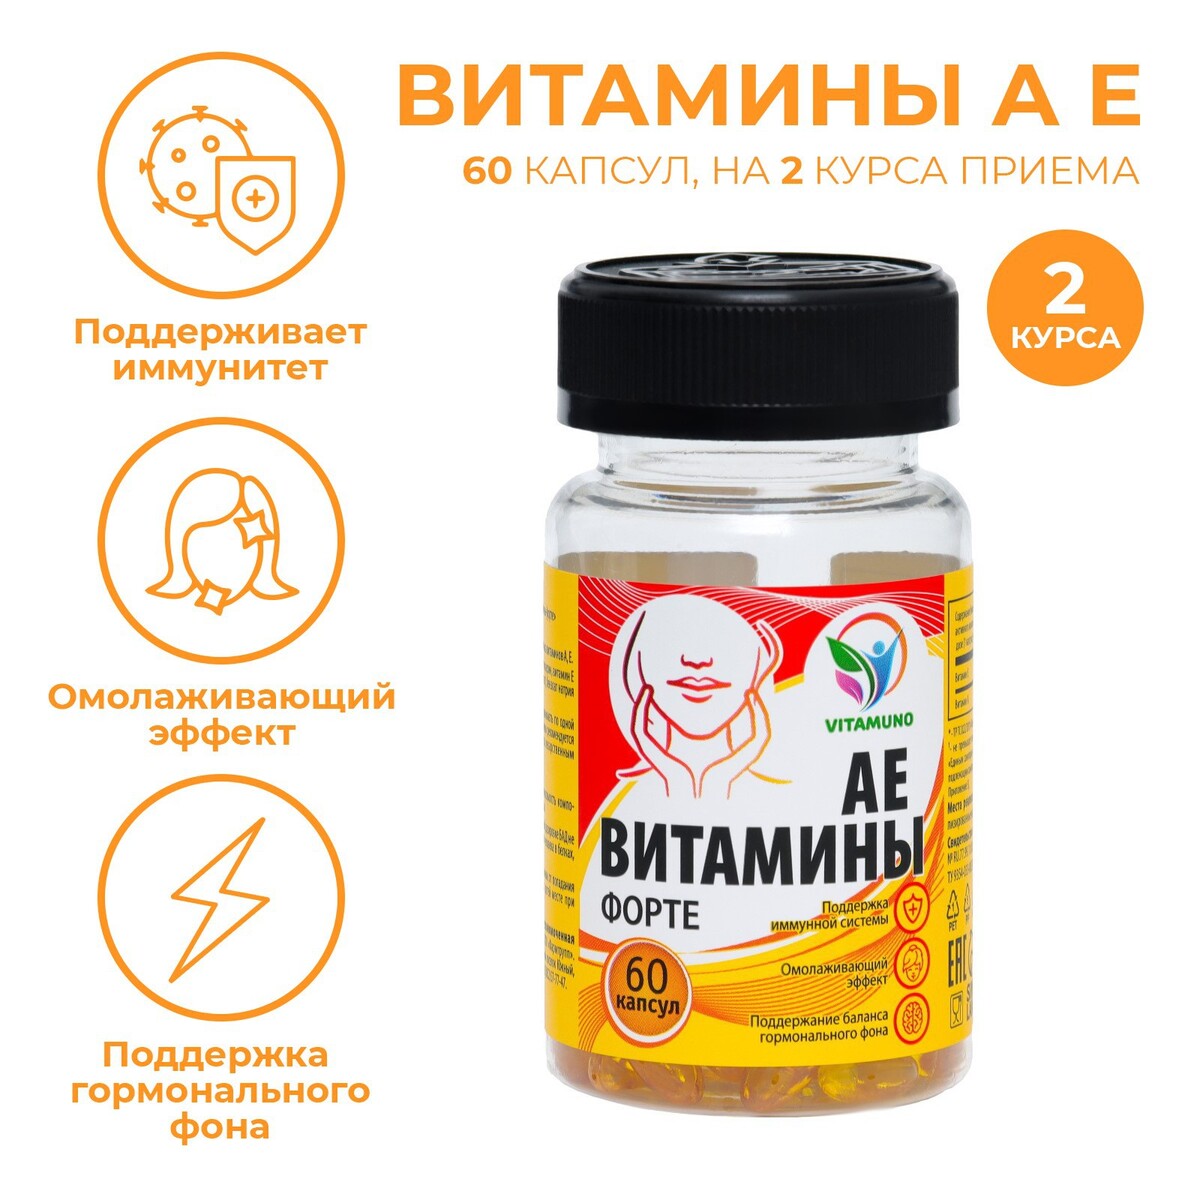 Ае витамины-форте, 60 капсул по 350 мг Vitamuno